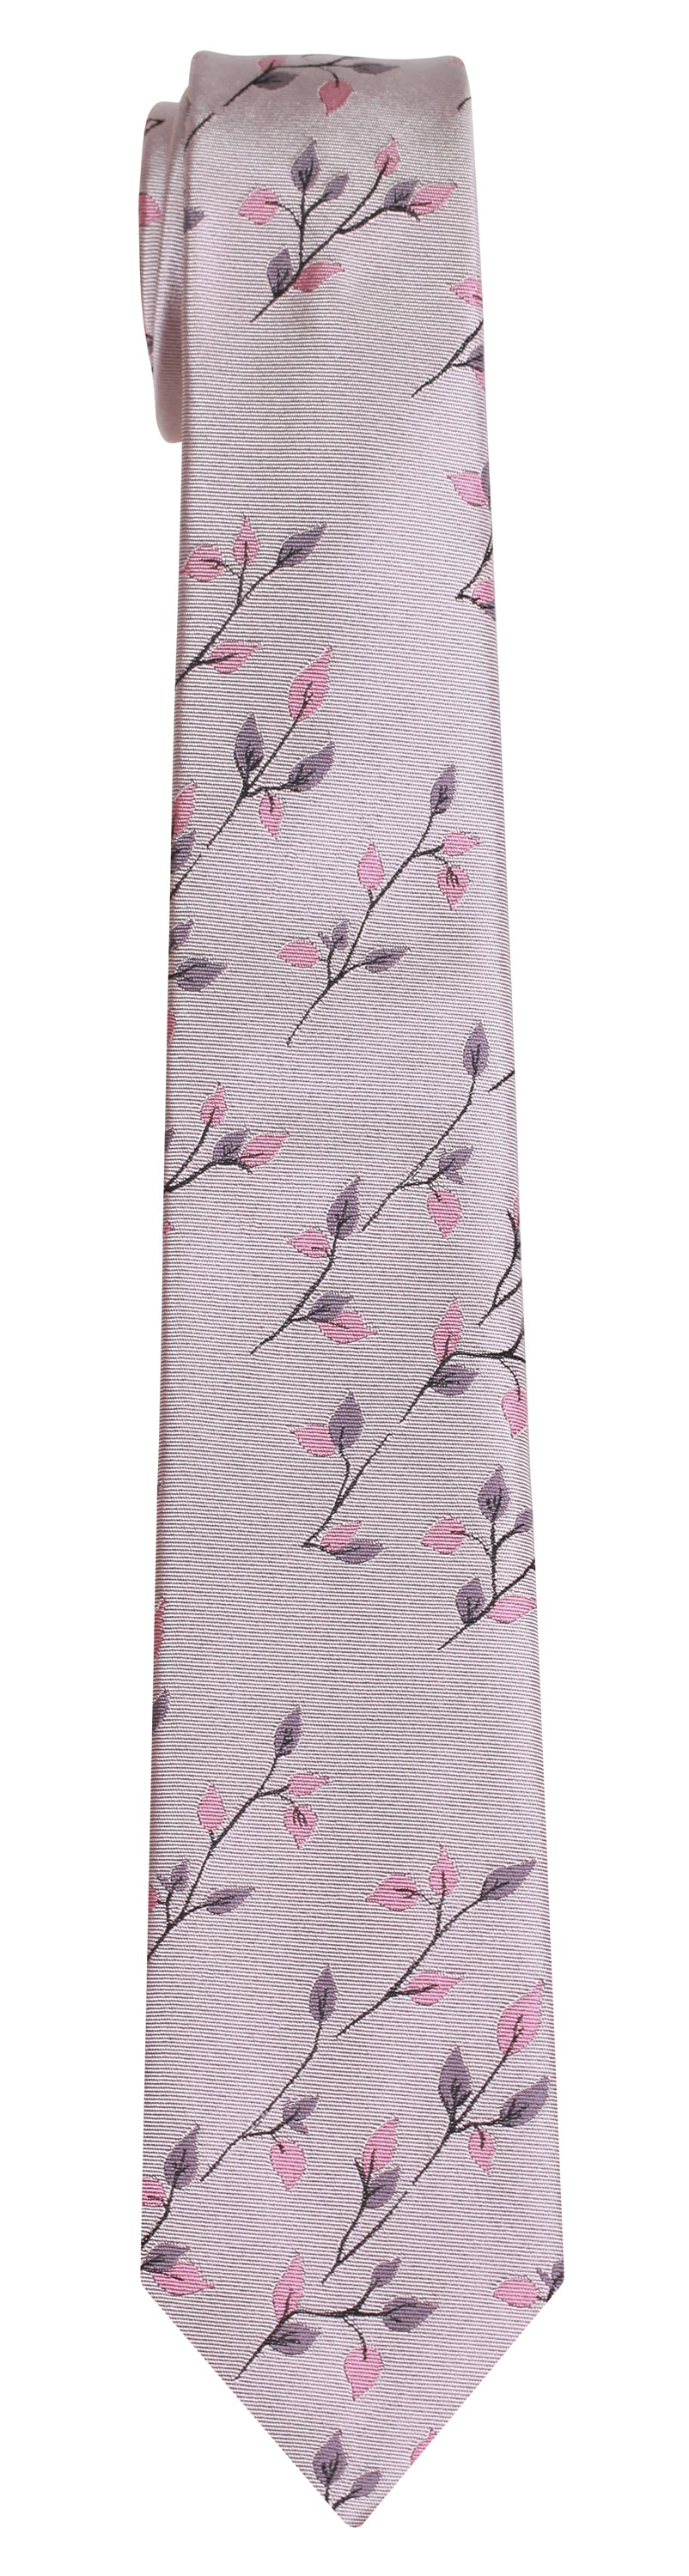 Mimi Fong Twigs Tie in Pink